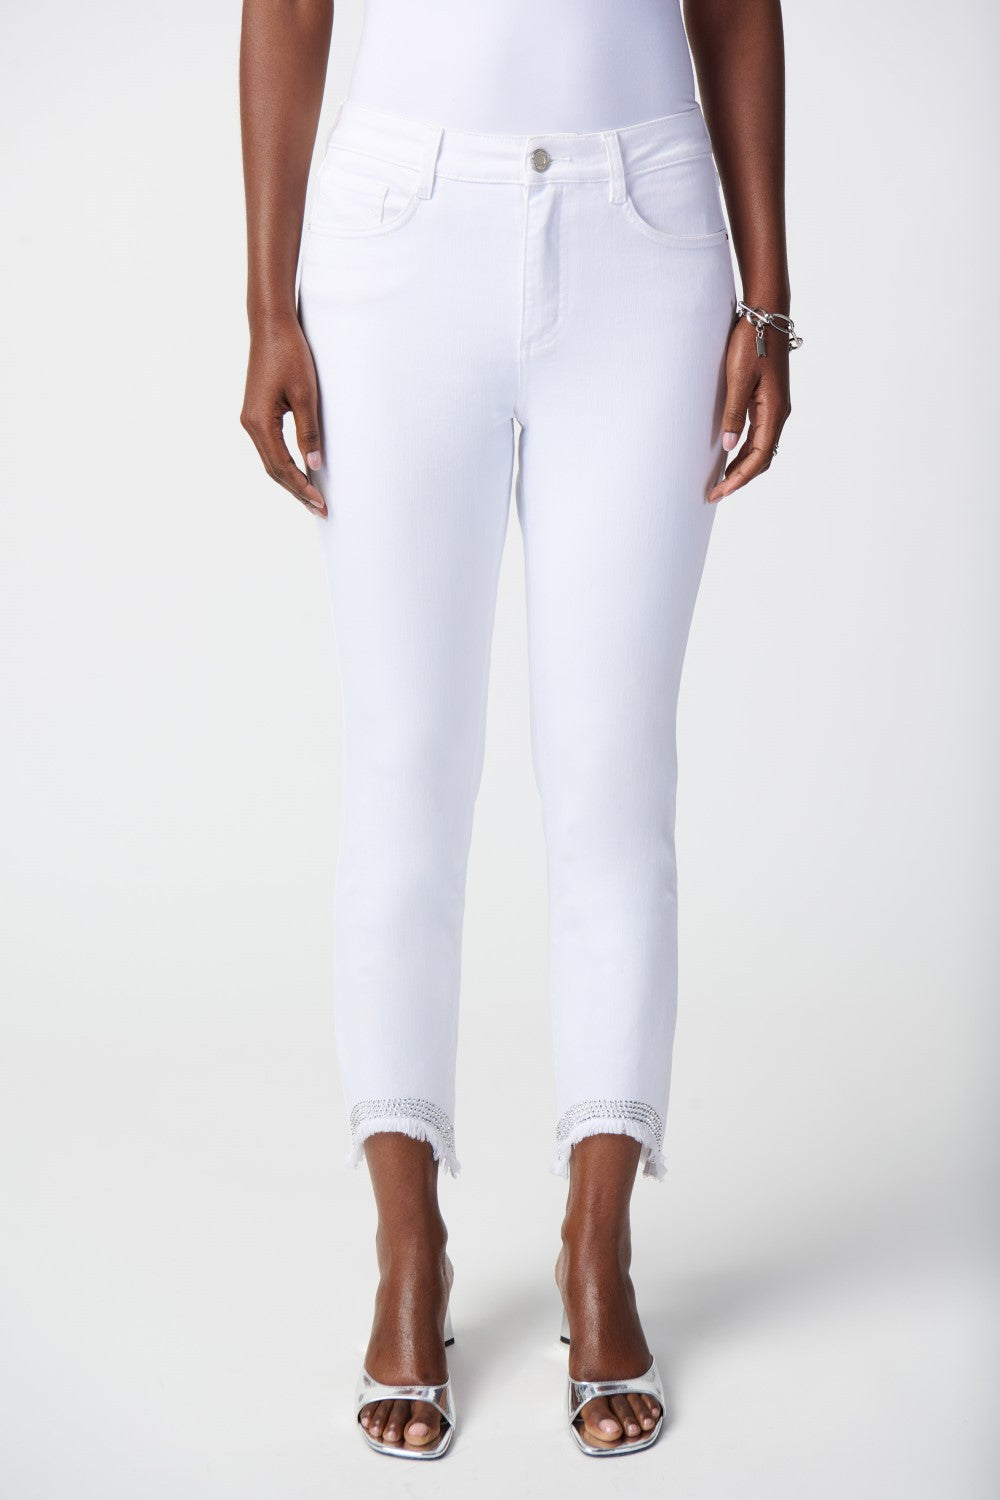 Joseph Ribkoff Jeans 241921 White